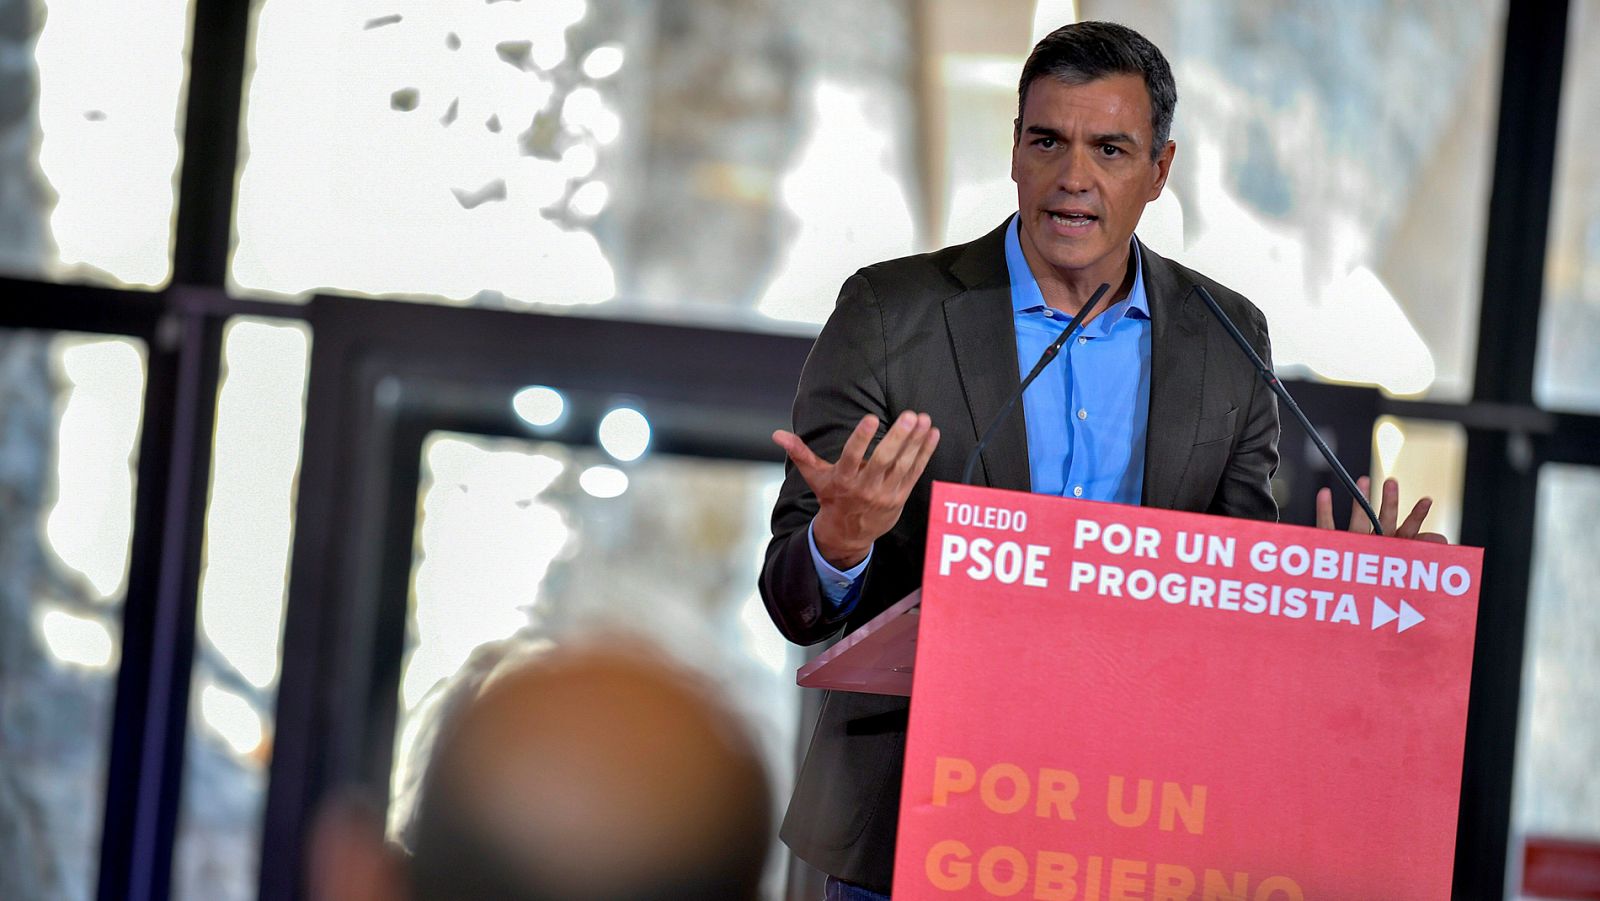 El PSOE descarta que Sánchez se presente a la investidura sin un acuerdo programático con Podemos